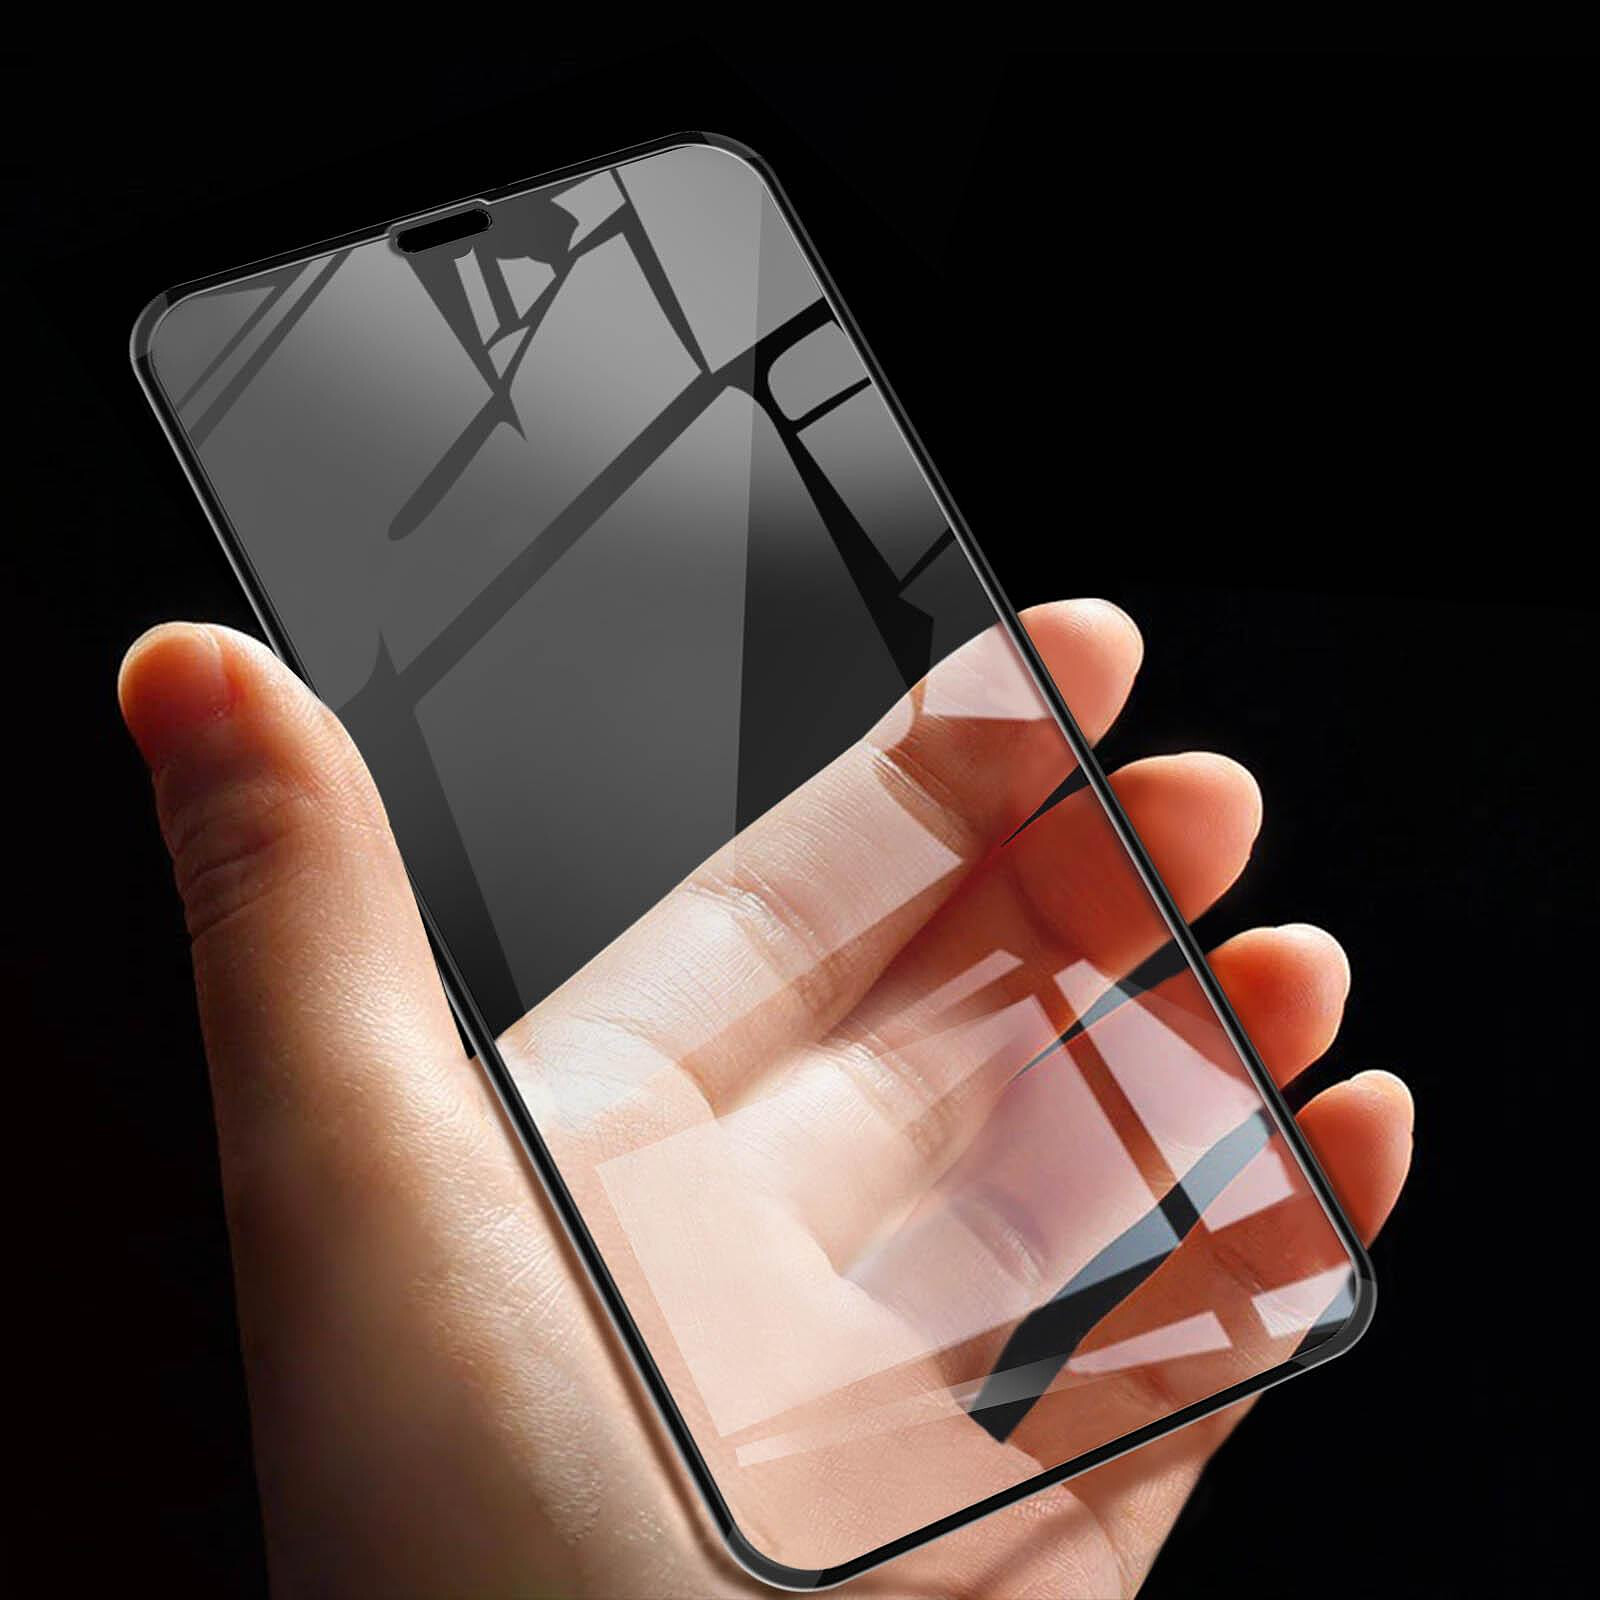 Film iphone xr protection écran verre trempé bords biseautés contour noir  GLASS-FULKOV-BK-XR - Conforama